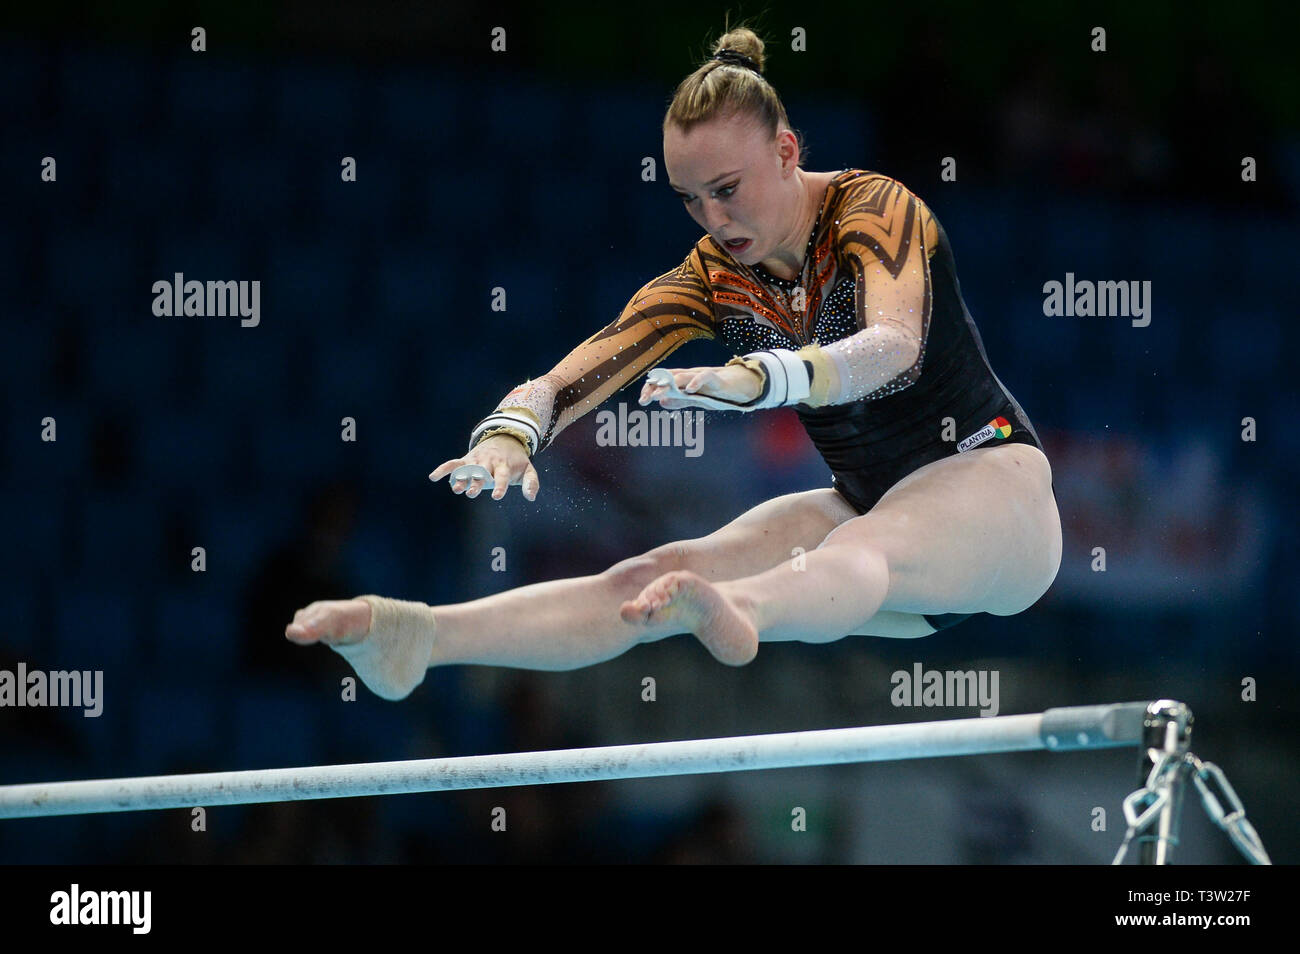 Tisha Volleman de Pays-bas vu en action au cours de la qualification des femmes du 8ème Championnat d'Europe en gymnastique artistique (jour 2). Banque D'Images